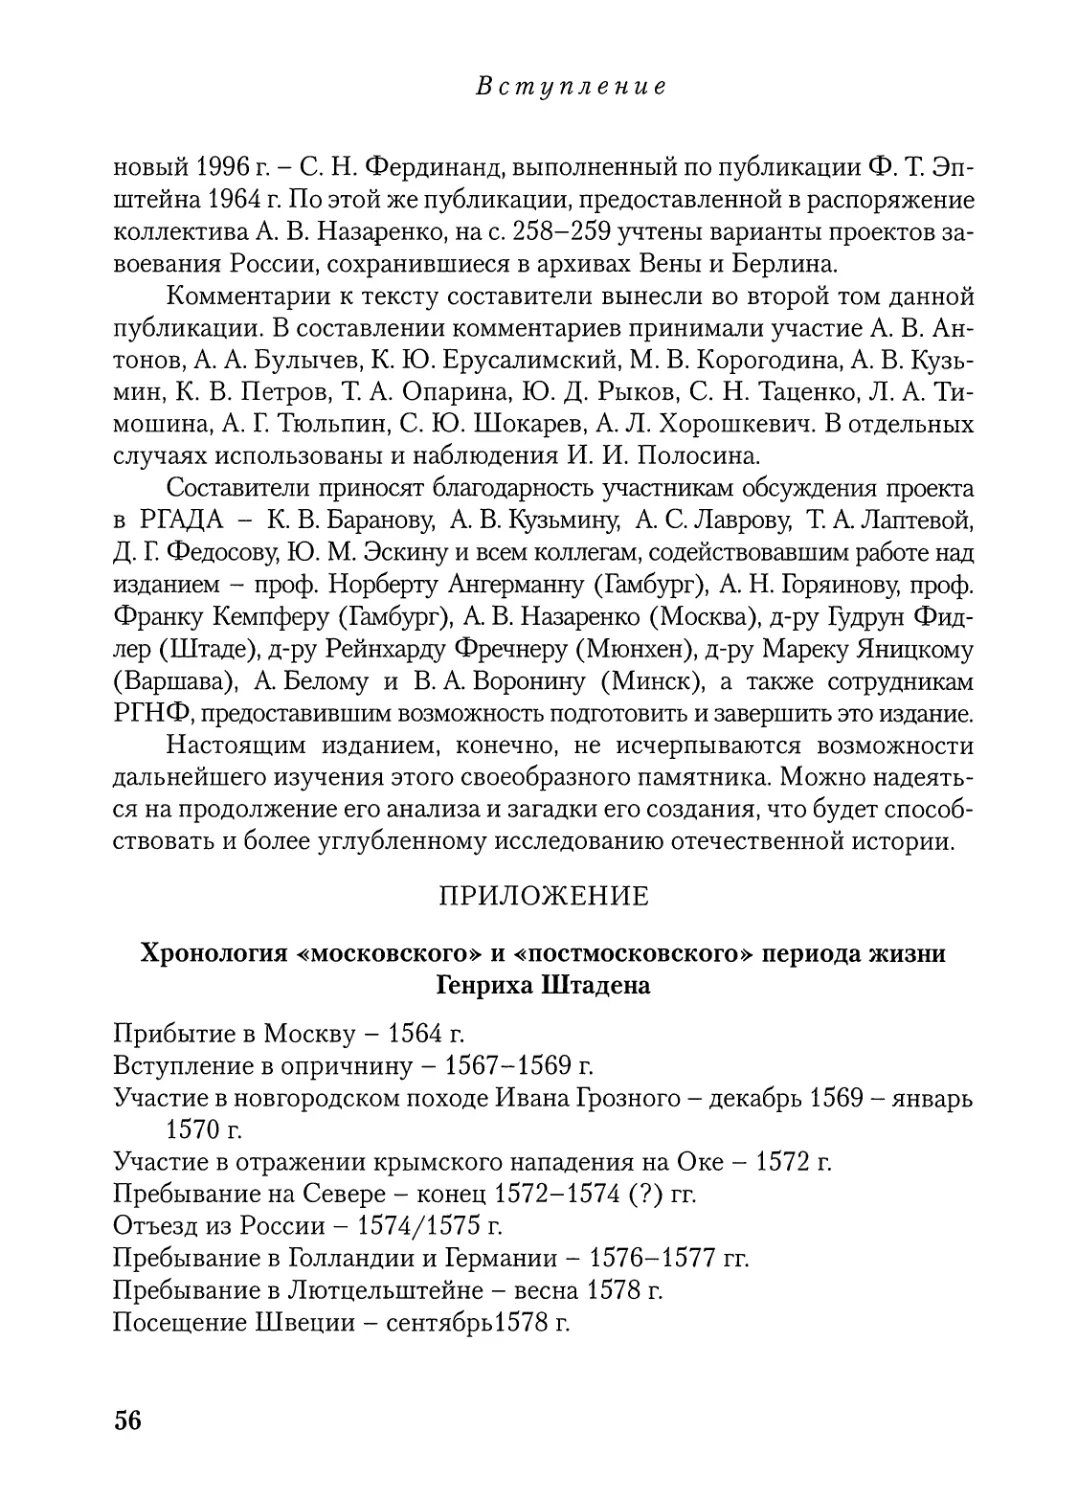 Приложение: Хронология «московского» и «постмосковского» периода жизни Генриха Штадена